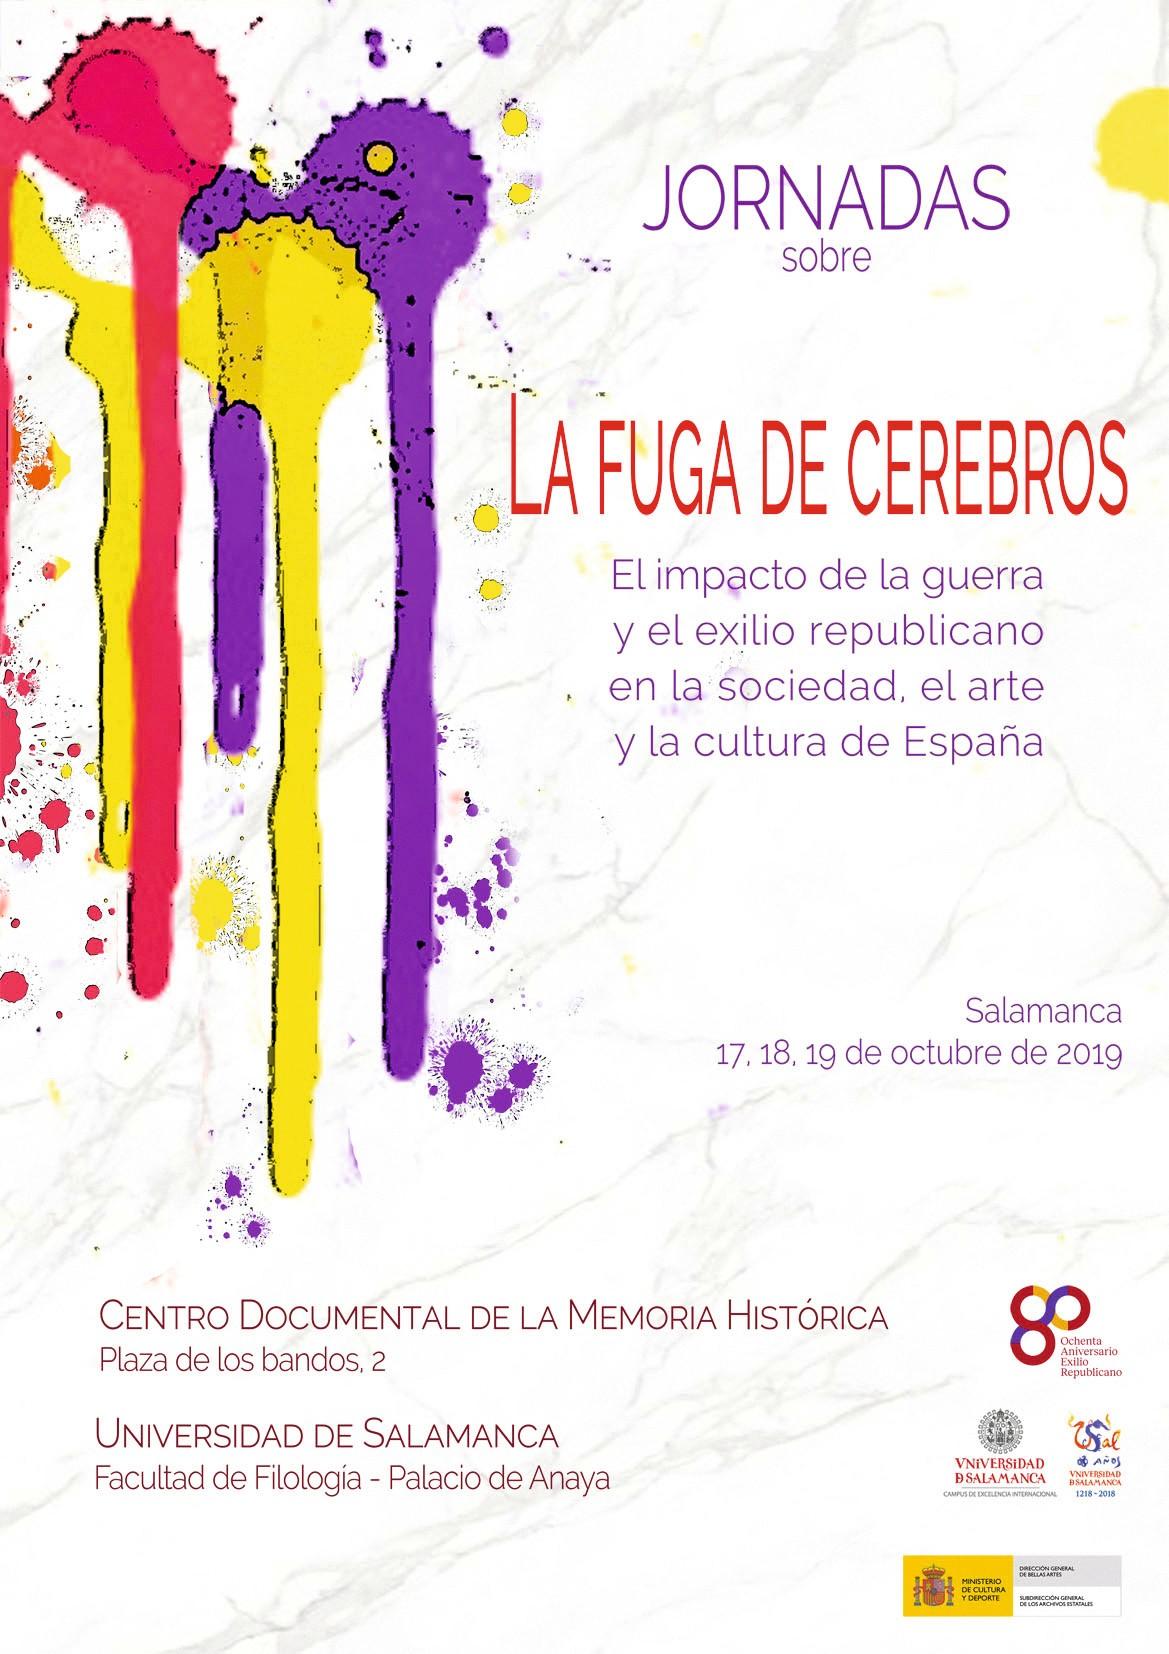 Cartel de las jornadas La fuga de cerebros, Centro Documental de la Memoria Histórica, 2019.